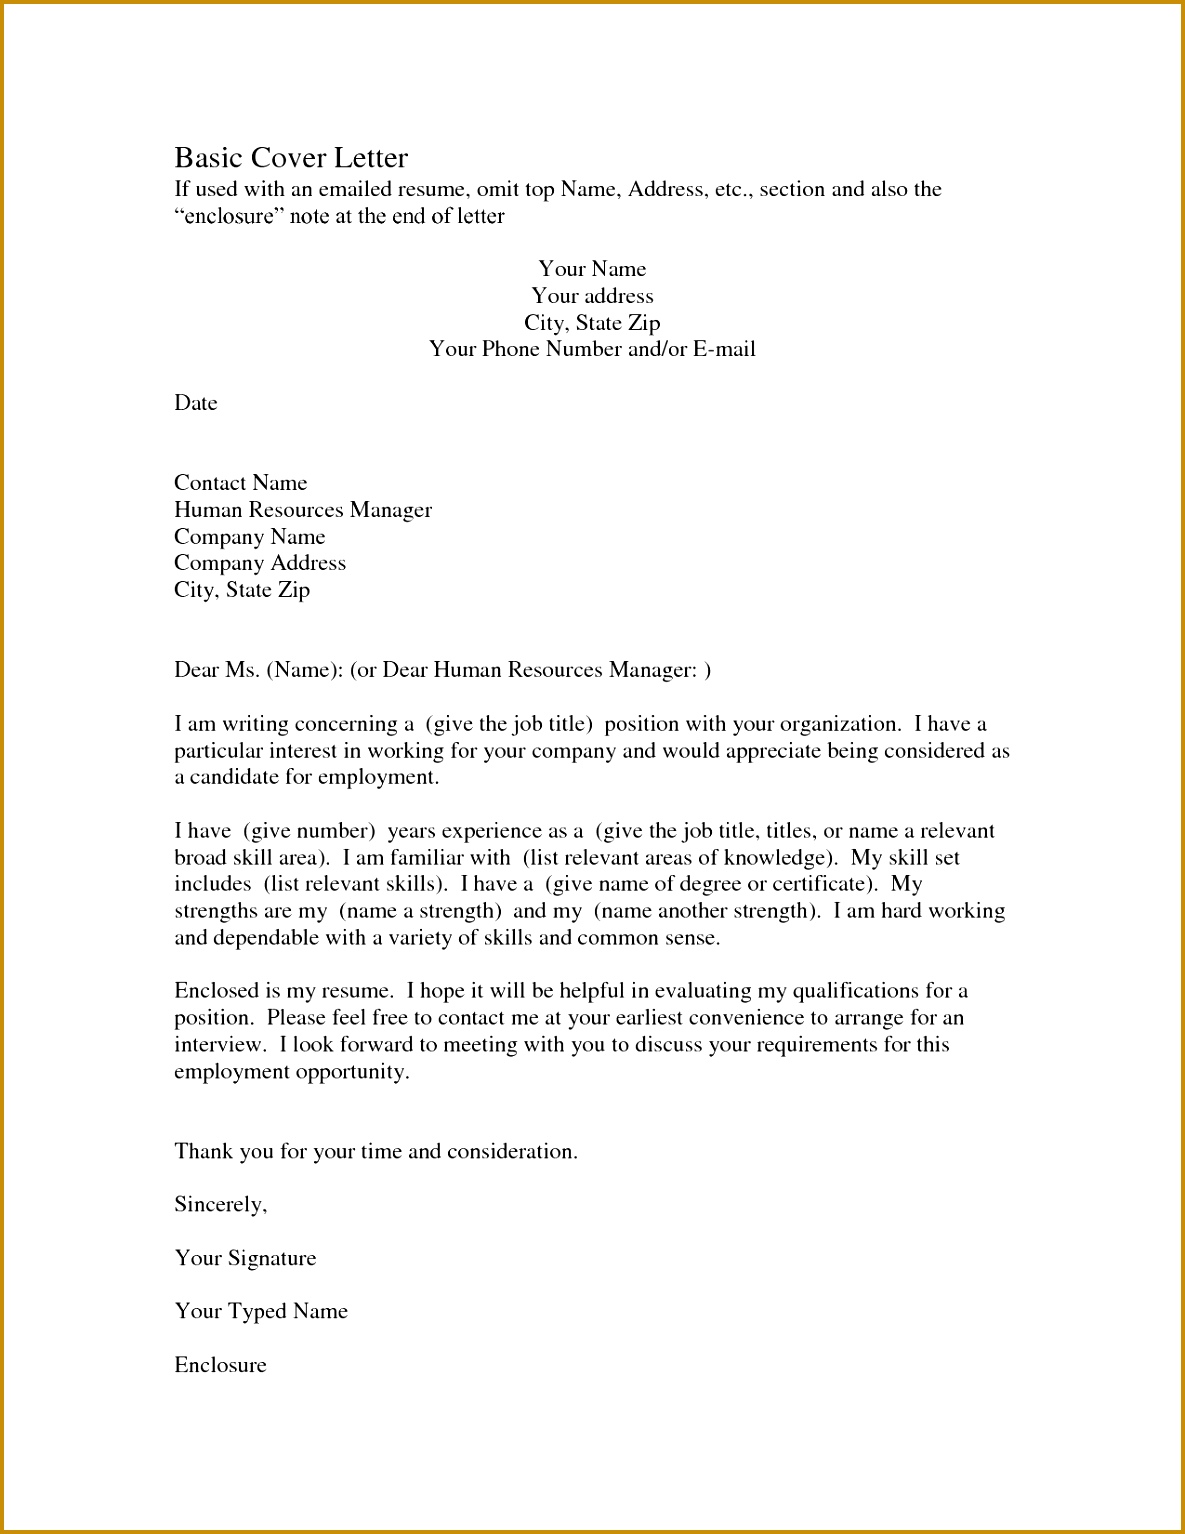 Sample Resume Cover Letter New New Example Cover Letter for Resume Inspirational Job Letter 0d 15341185